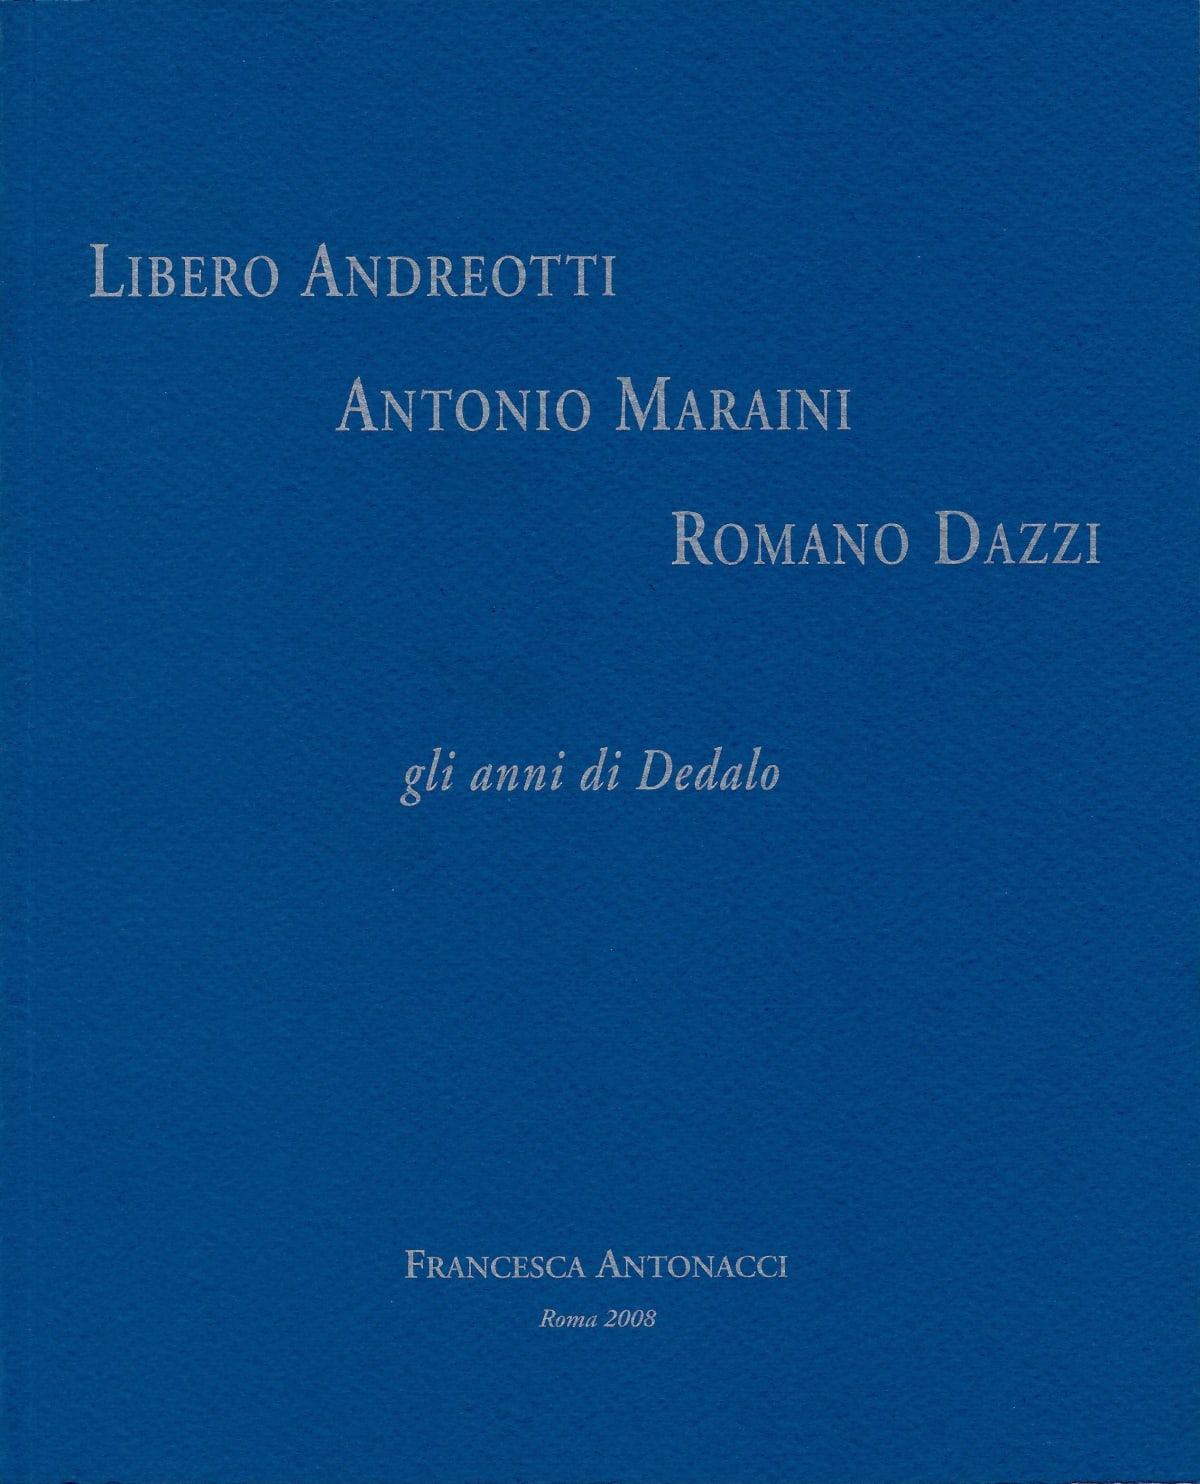 Libero Andreotti Antonio Maraini Romano Dazzi. 